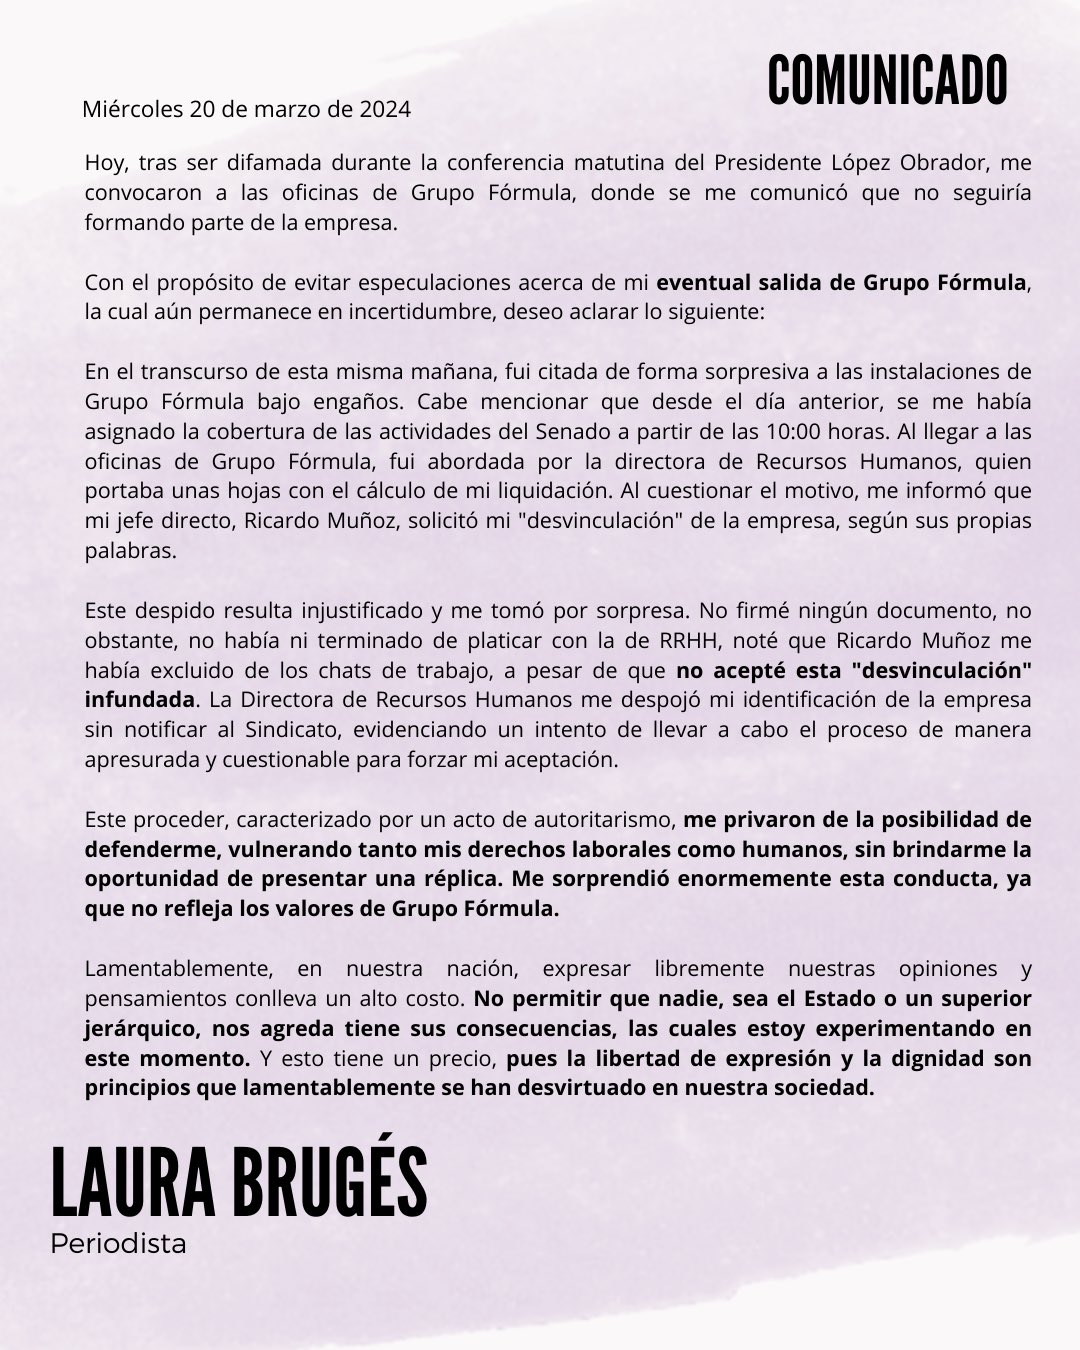 Comunicado de Laura Brugés